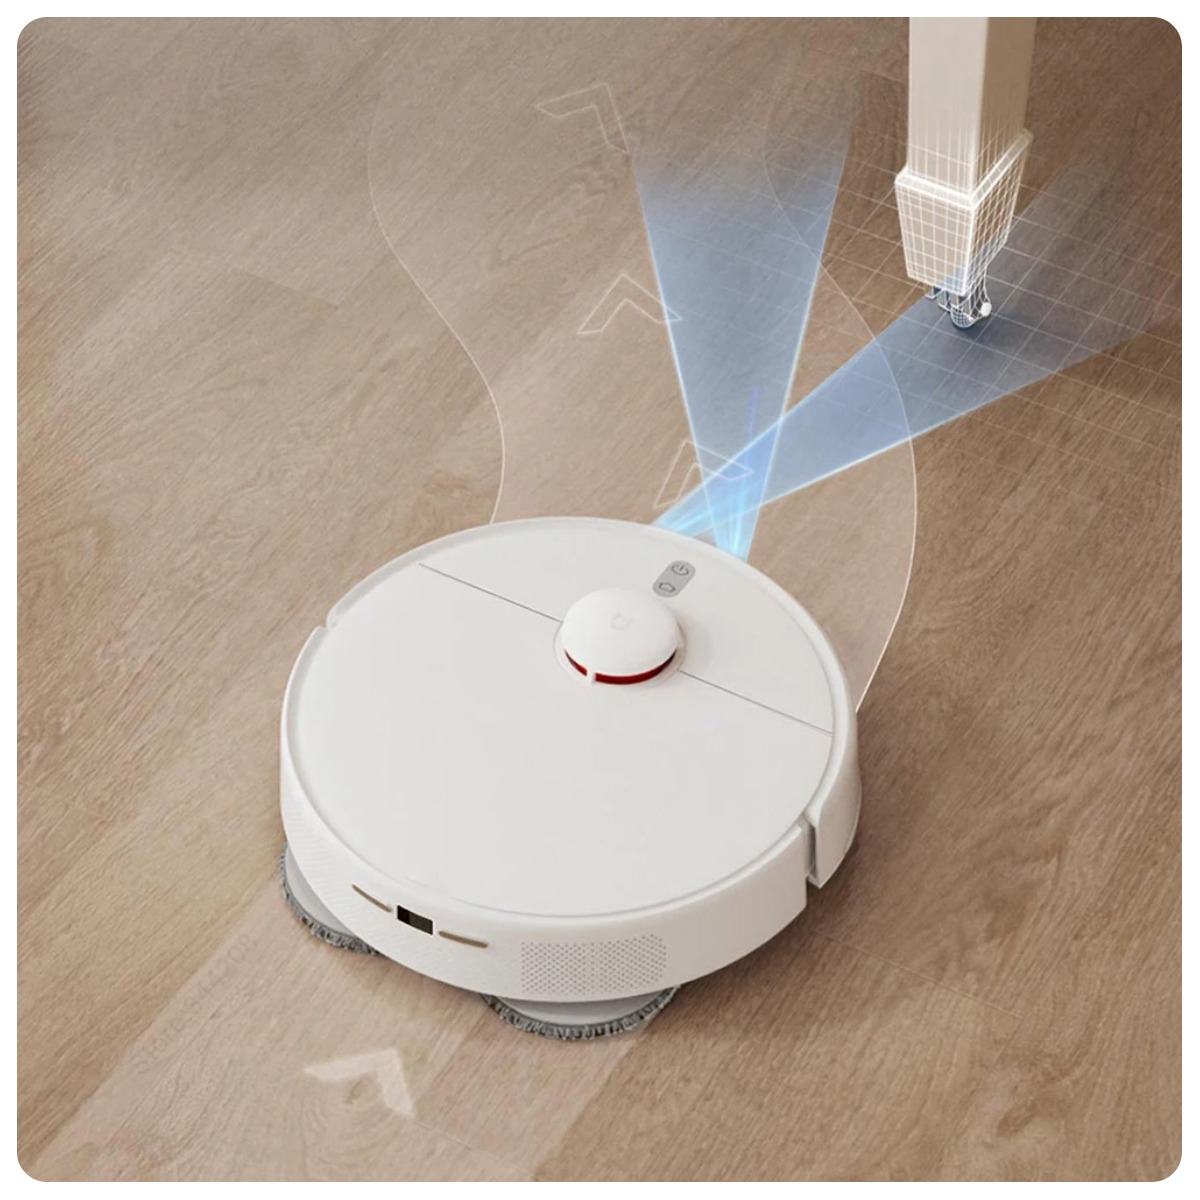 Mijia-Self-Cleaning-Robot-Vacuum-Mop-2-08